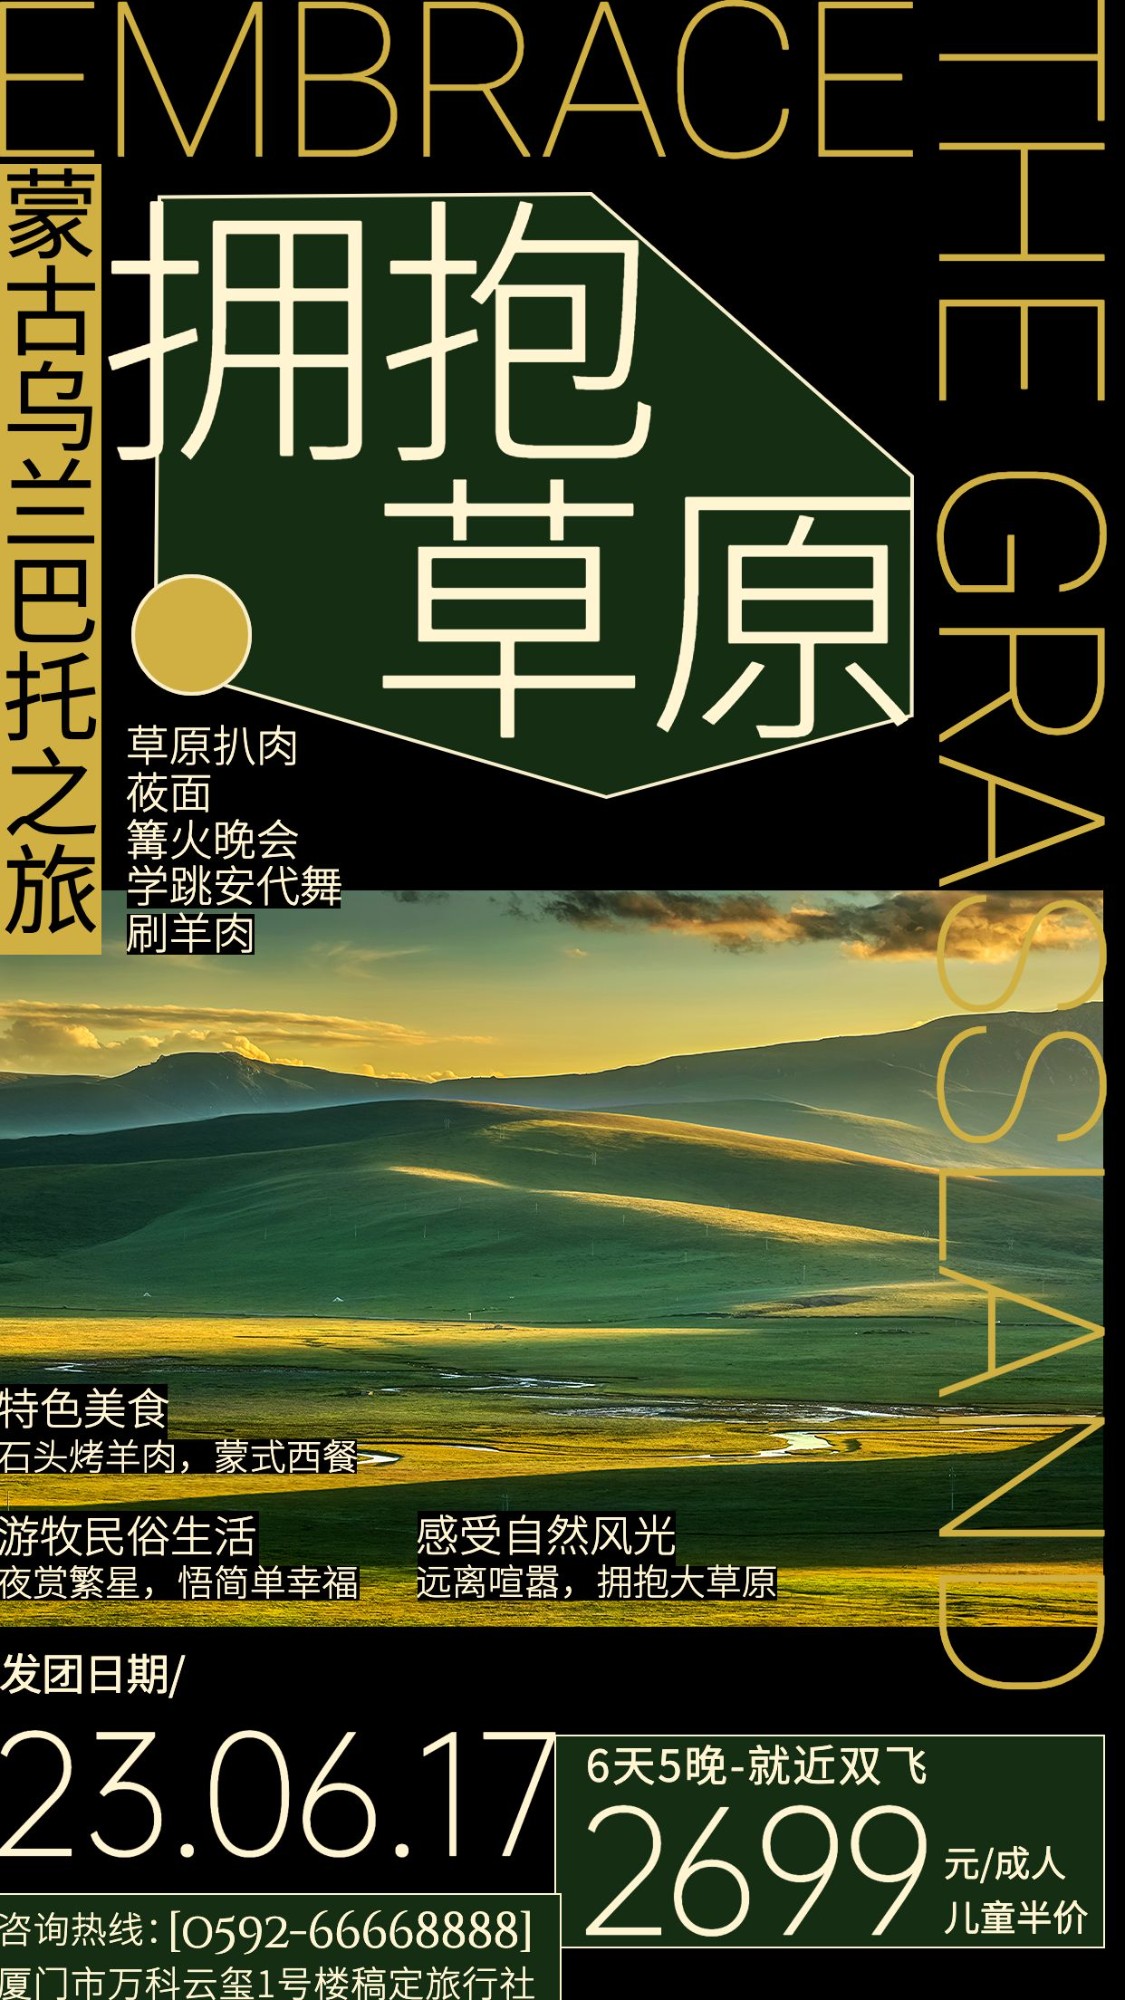 蒙古草原旅游团招募粗野主义海报